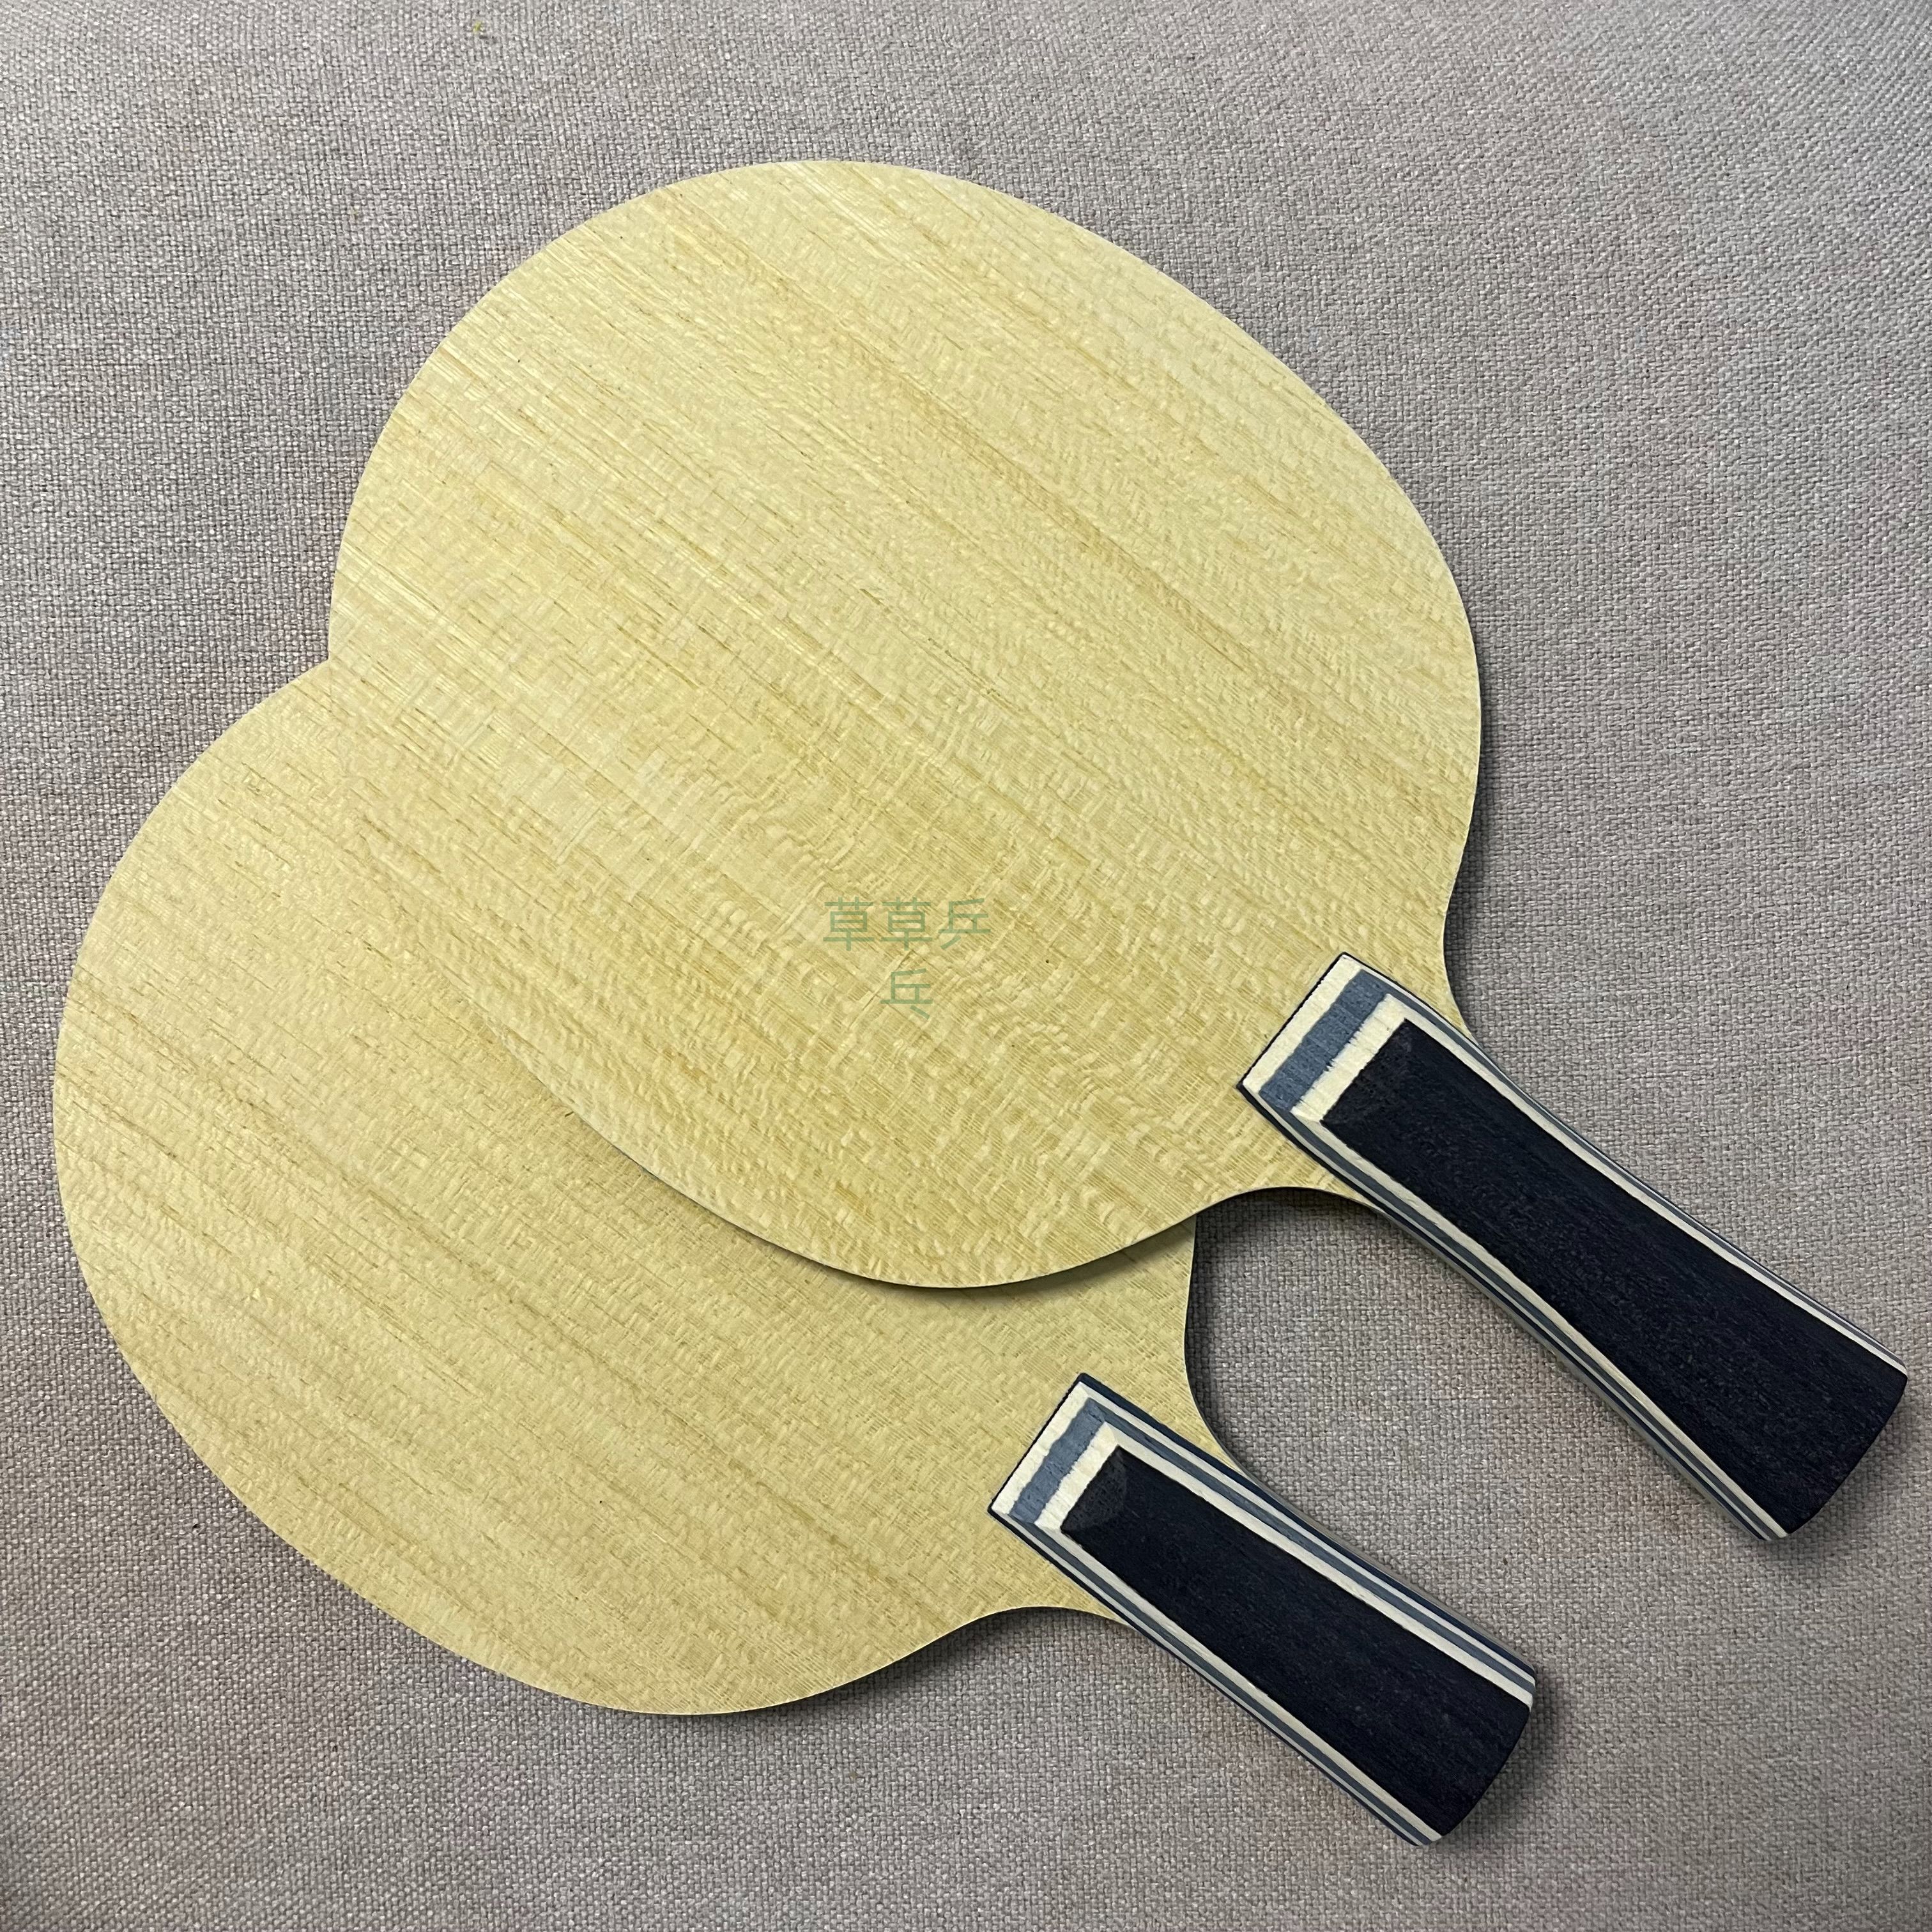 正品特价海天超级VIS外置纤维SALC乒乓球底板碳纤维乒乓球拍直横